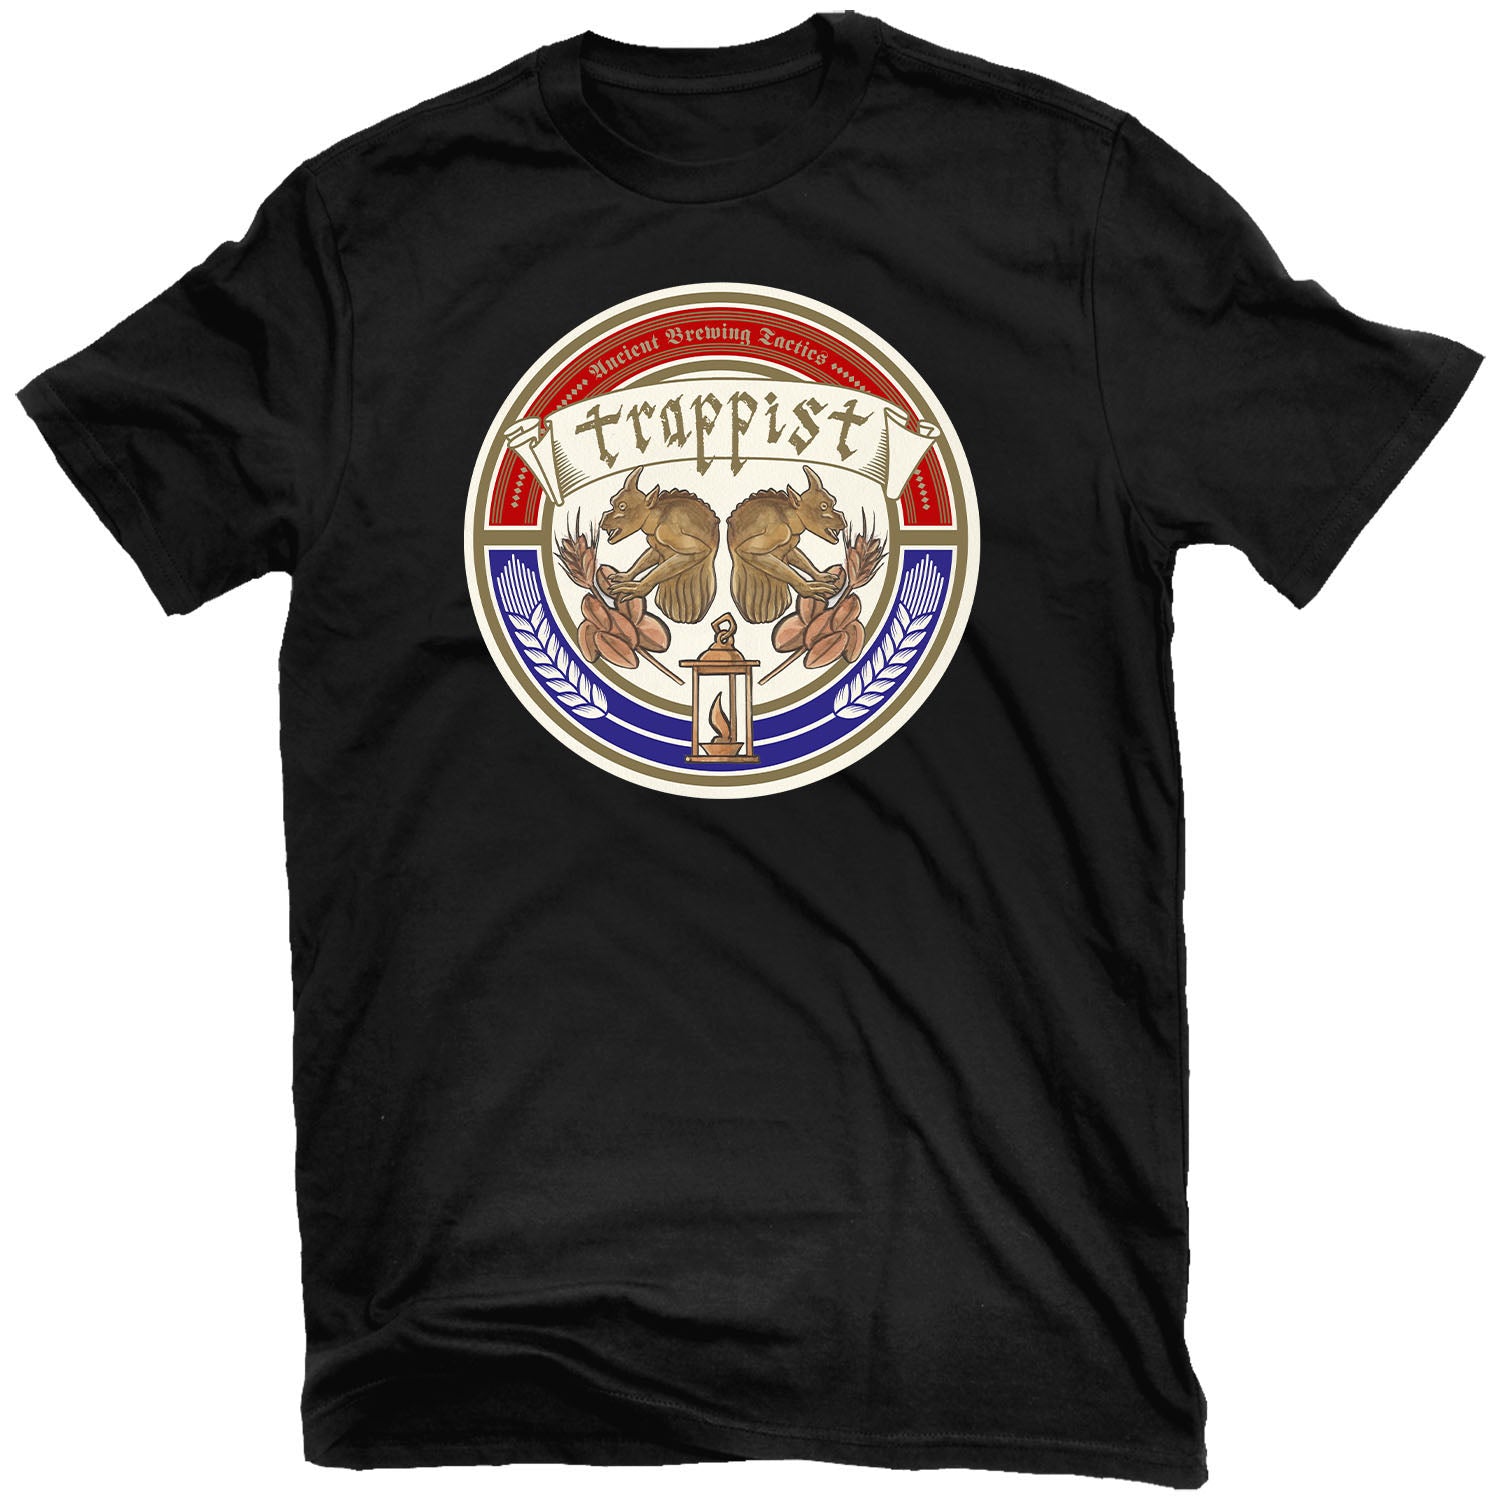 Trappist "Ancient Brewing Tactics" T-Shirt